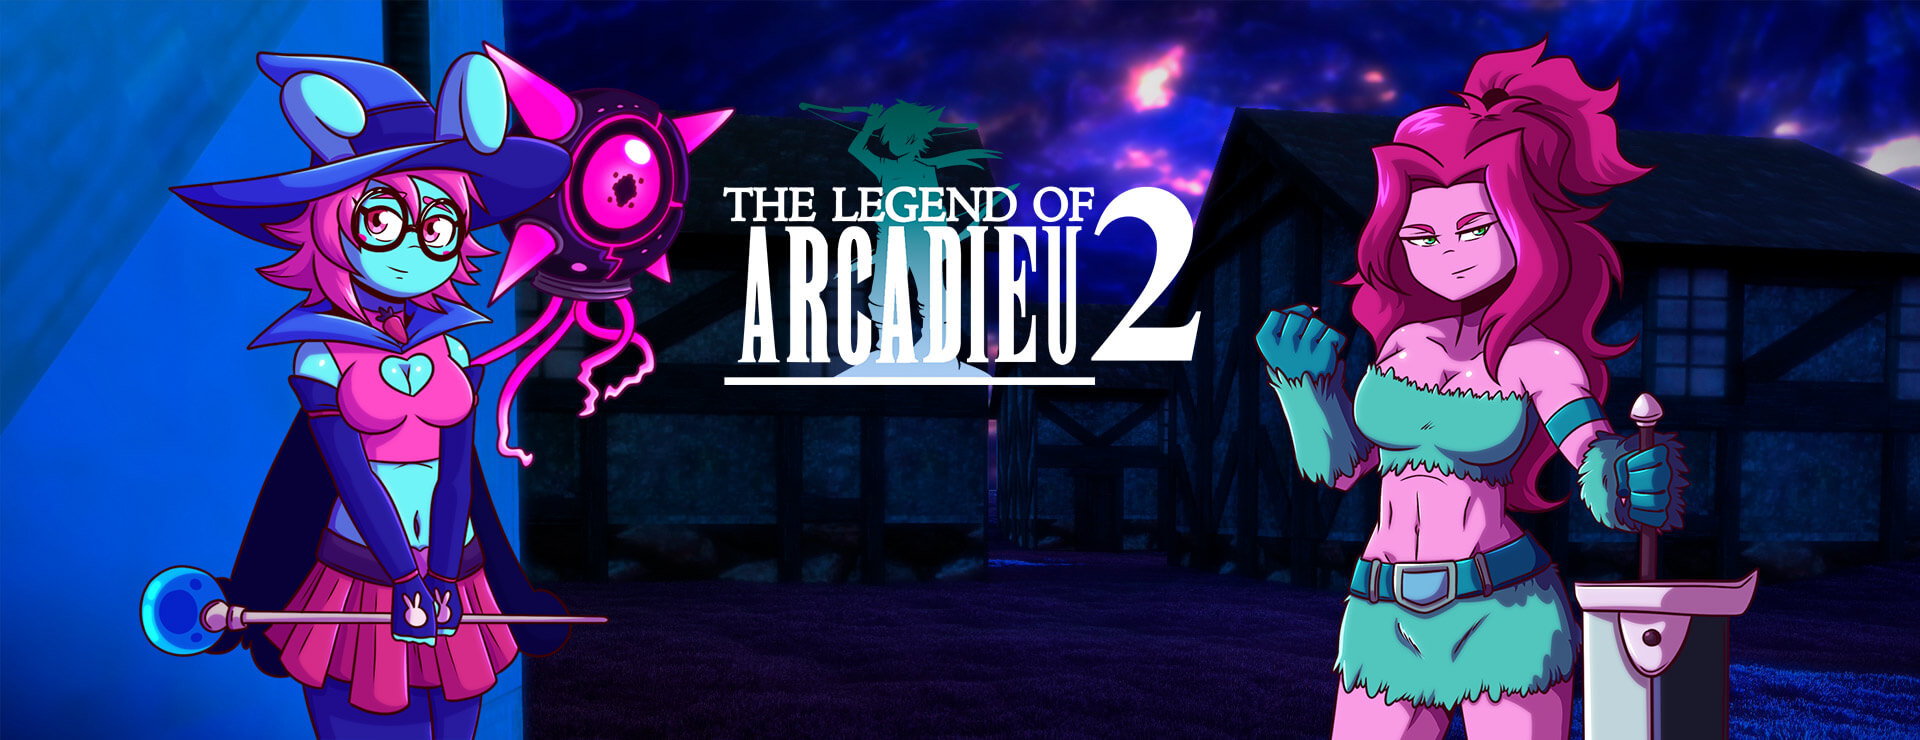 The Legend of Arcadieu 2 - RPG Spiel